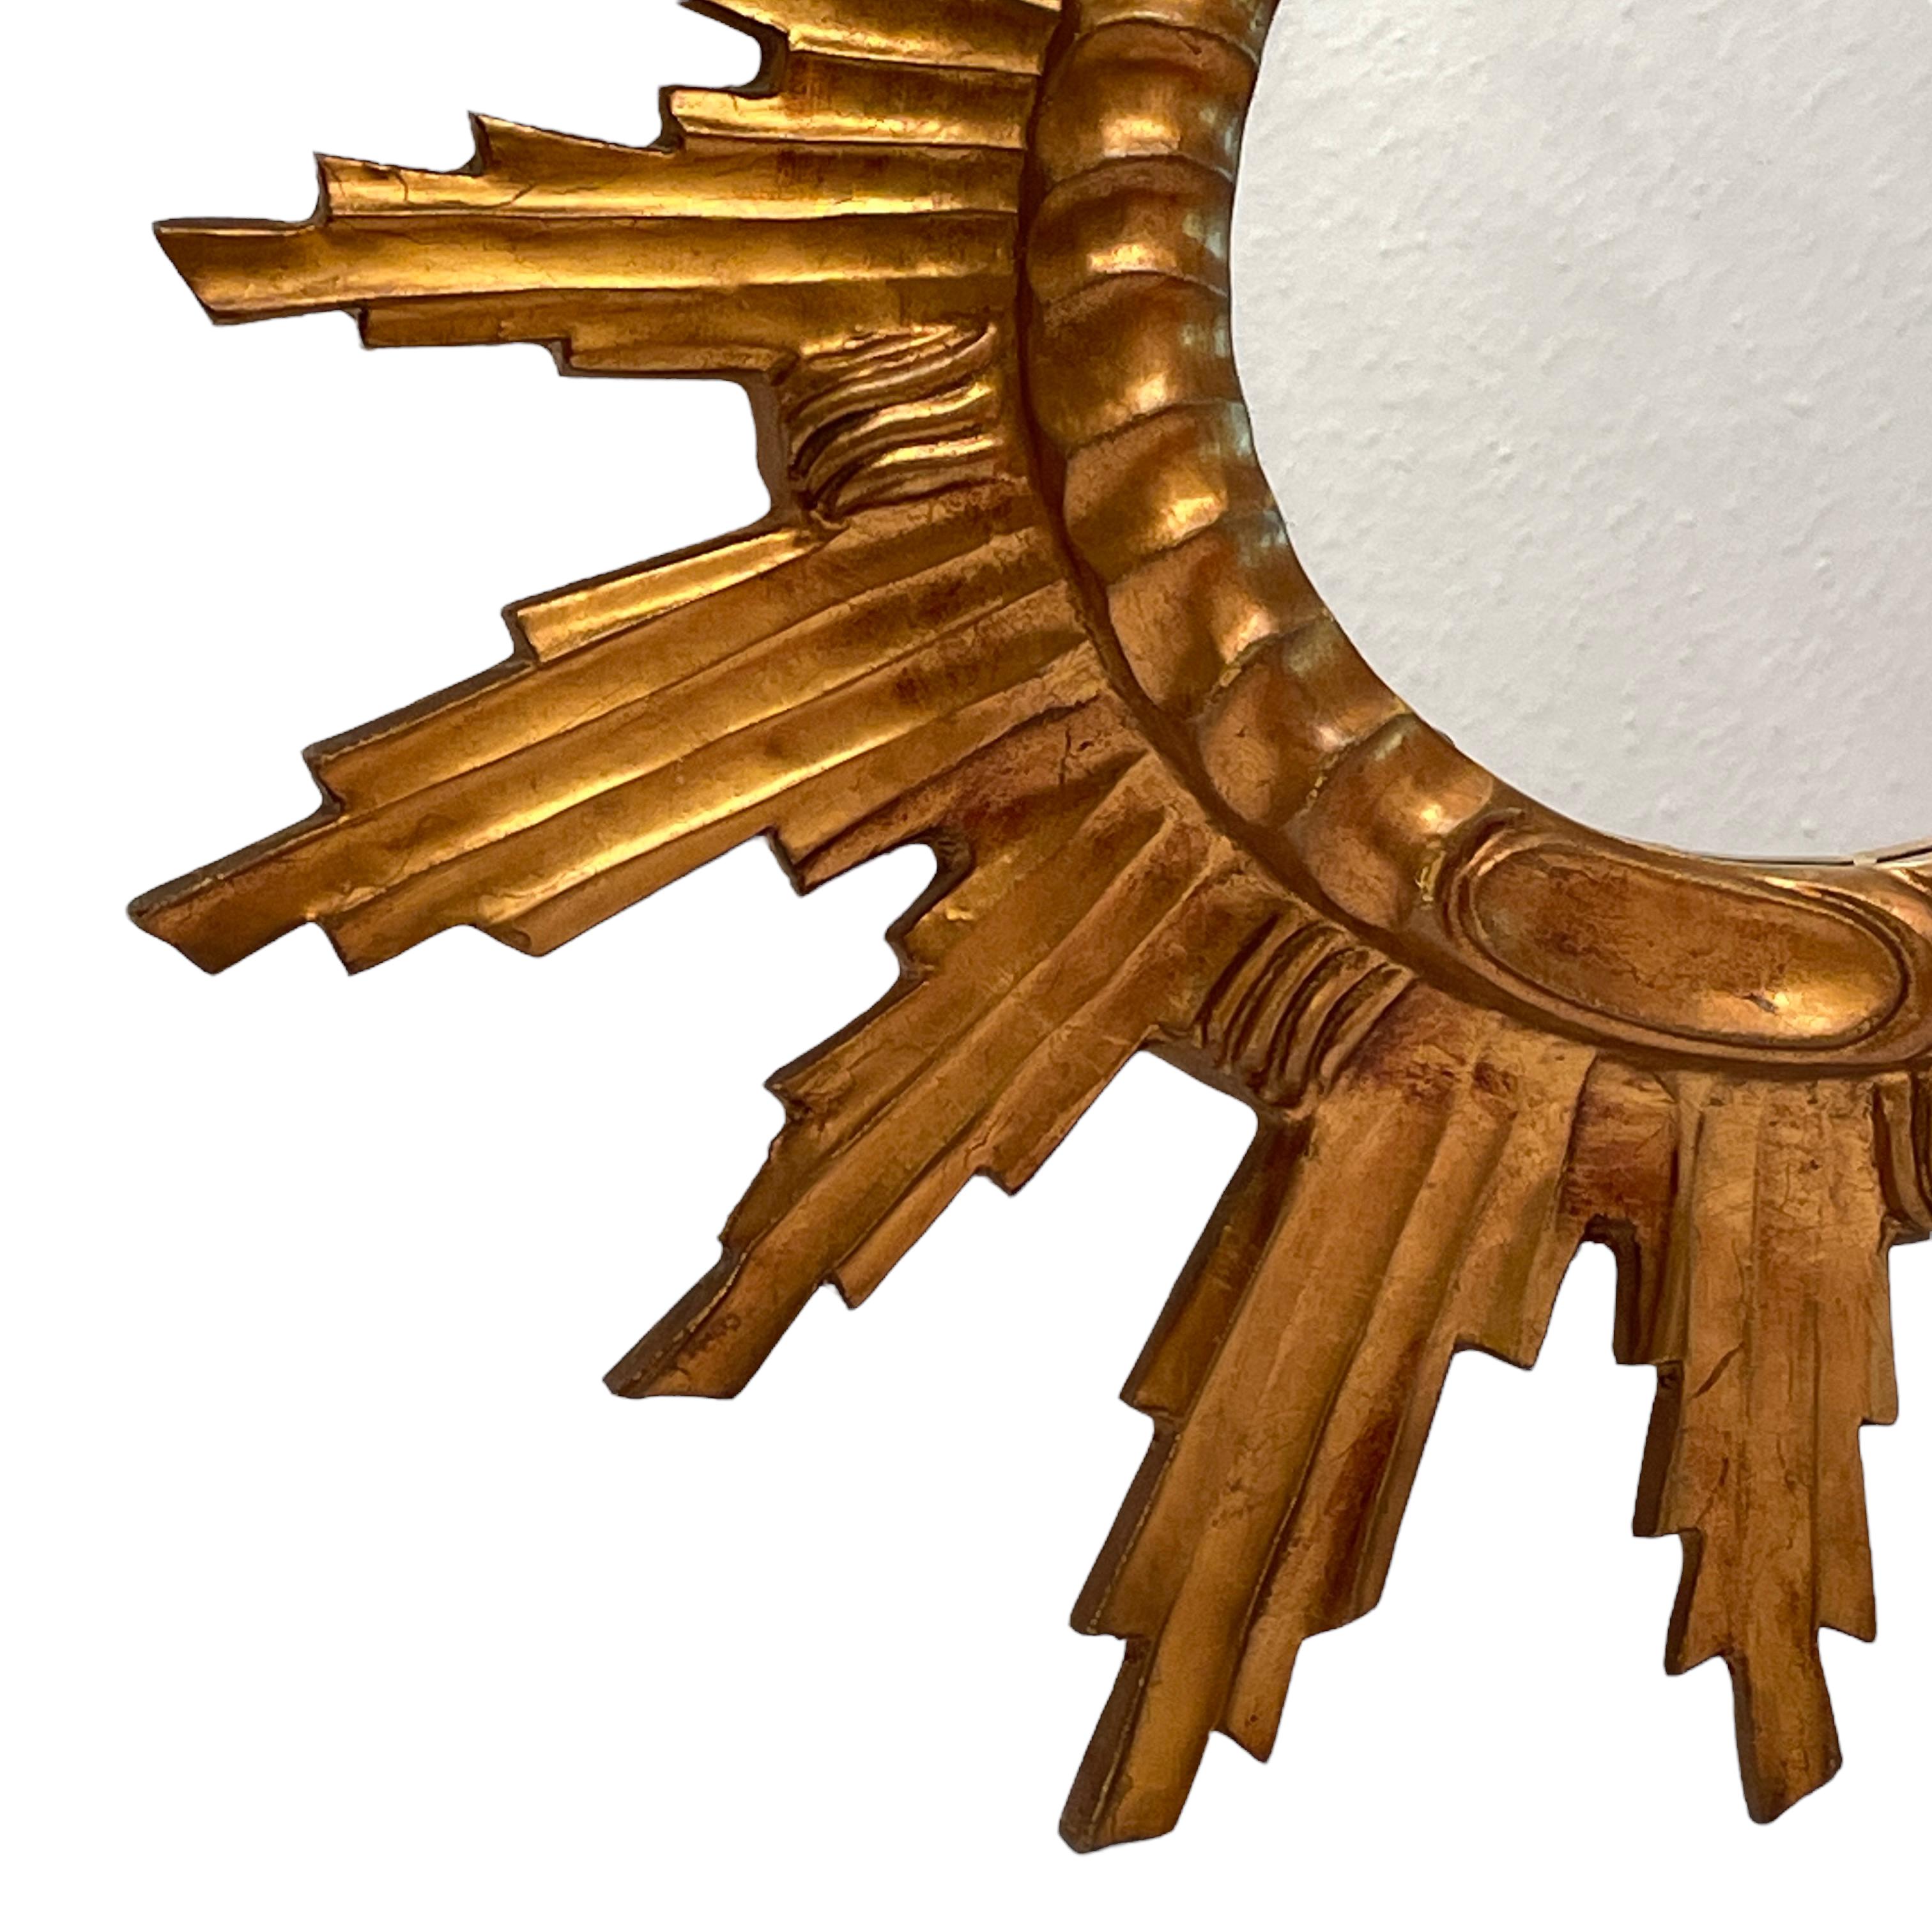 Un beau miroir en forme de starburst. Réalisé en composition dorée et en bois. Il mesure environ 22,13 pouces de diamètre, le miroir lui-même mesure environ 7,38 pouces de diamètre. Il se tient à environ 2